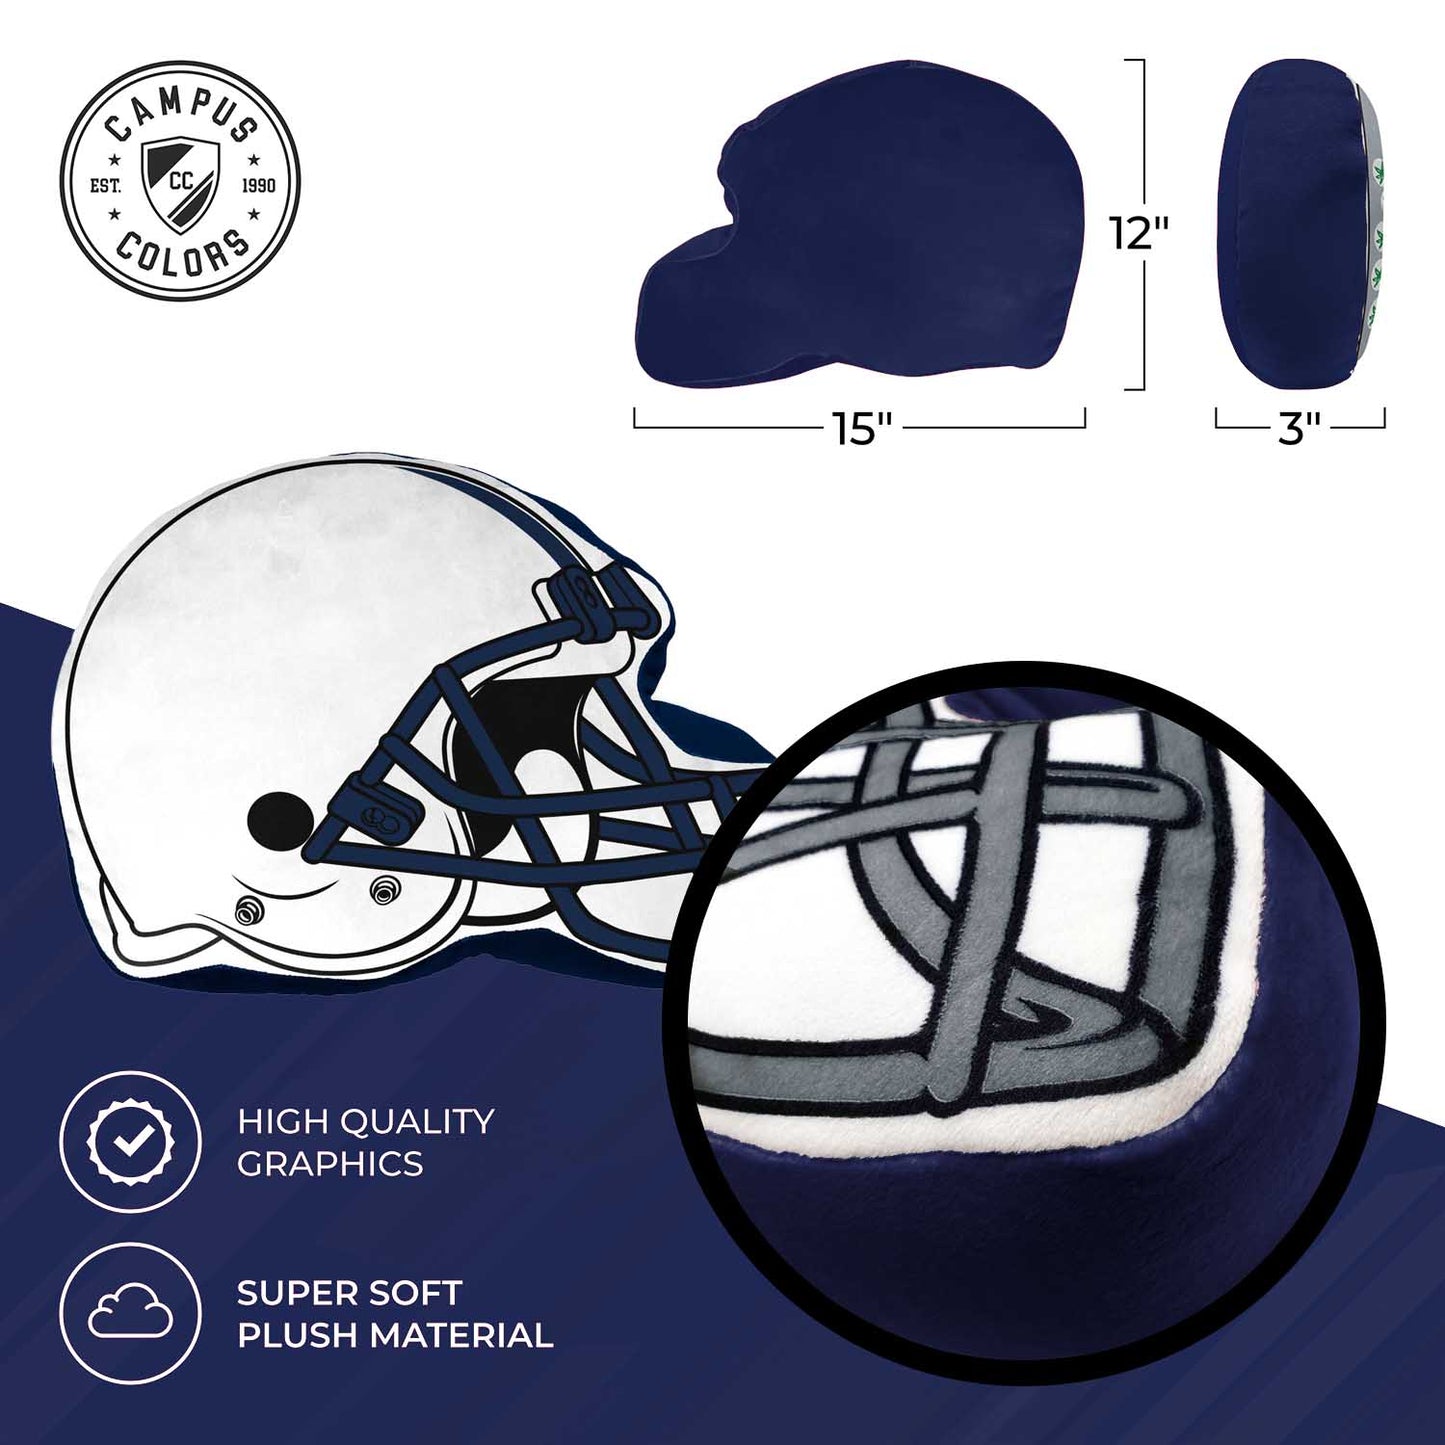 Penn State Nittany Lions NCAA Helmet Super Soft Football Pillow - White